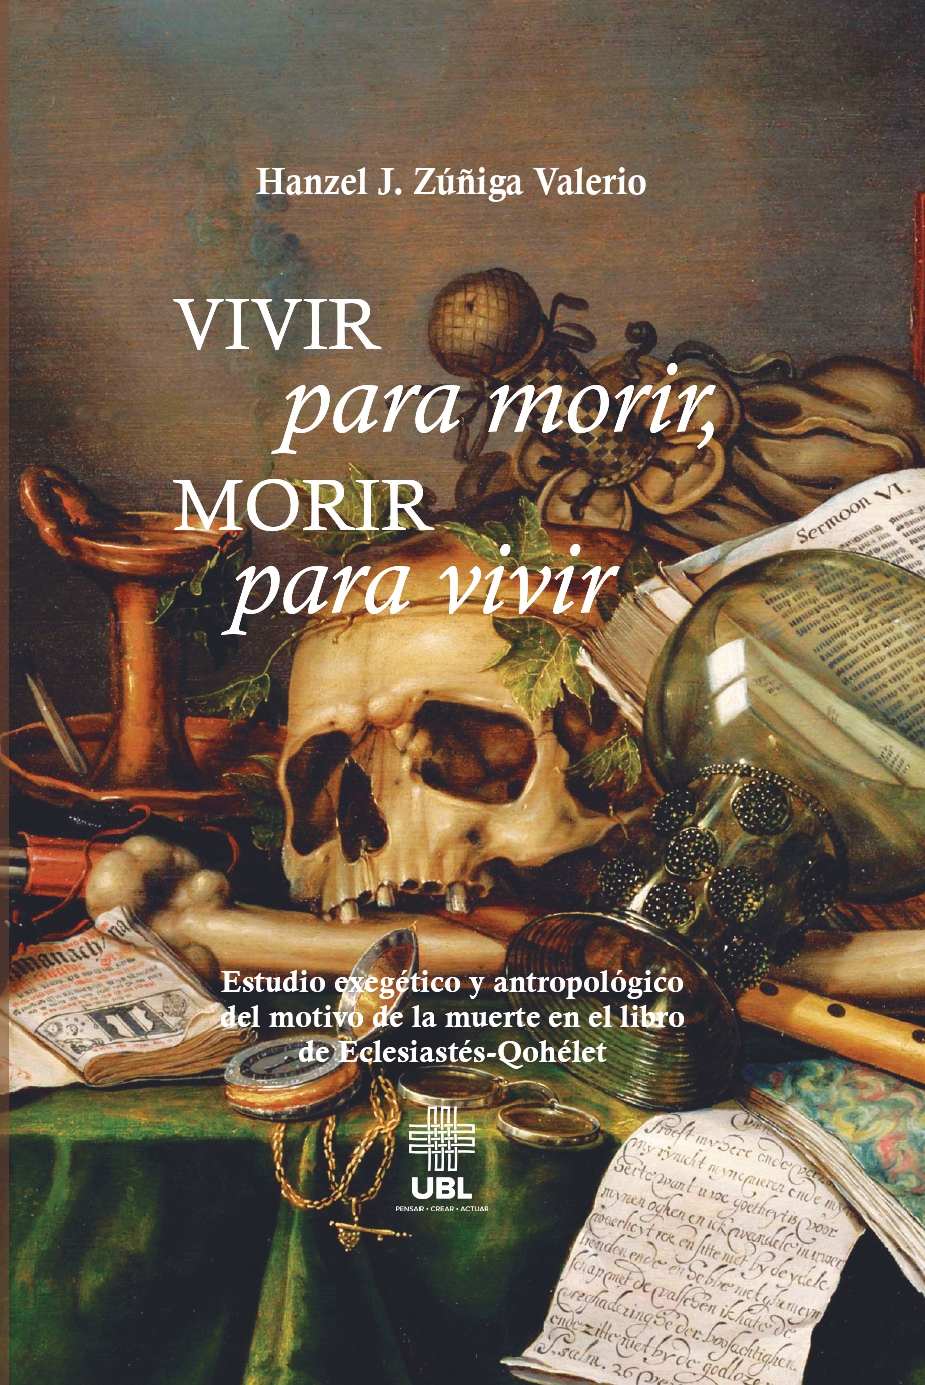 Vivir para morir, morir para vivir: Estudio exegético y antropológico del motivo de la muerte en el libro de Eclesiastés-Qohélet